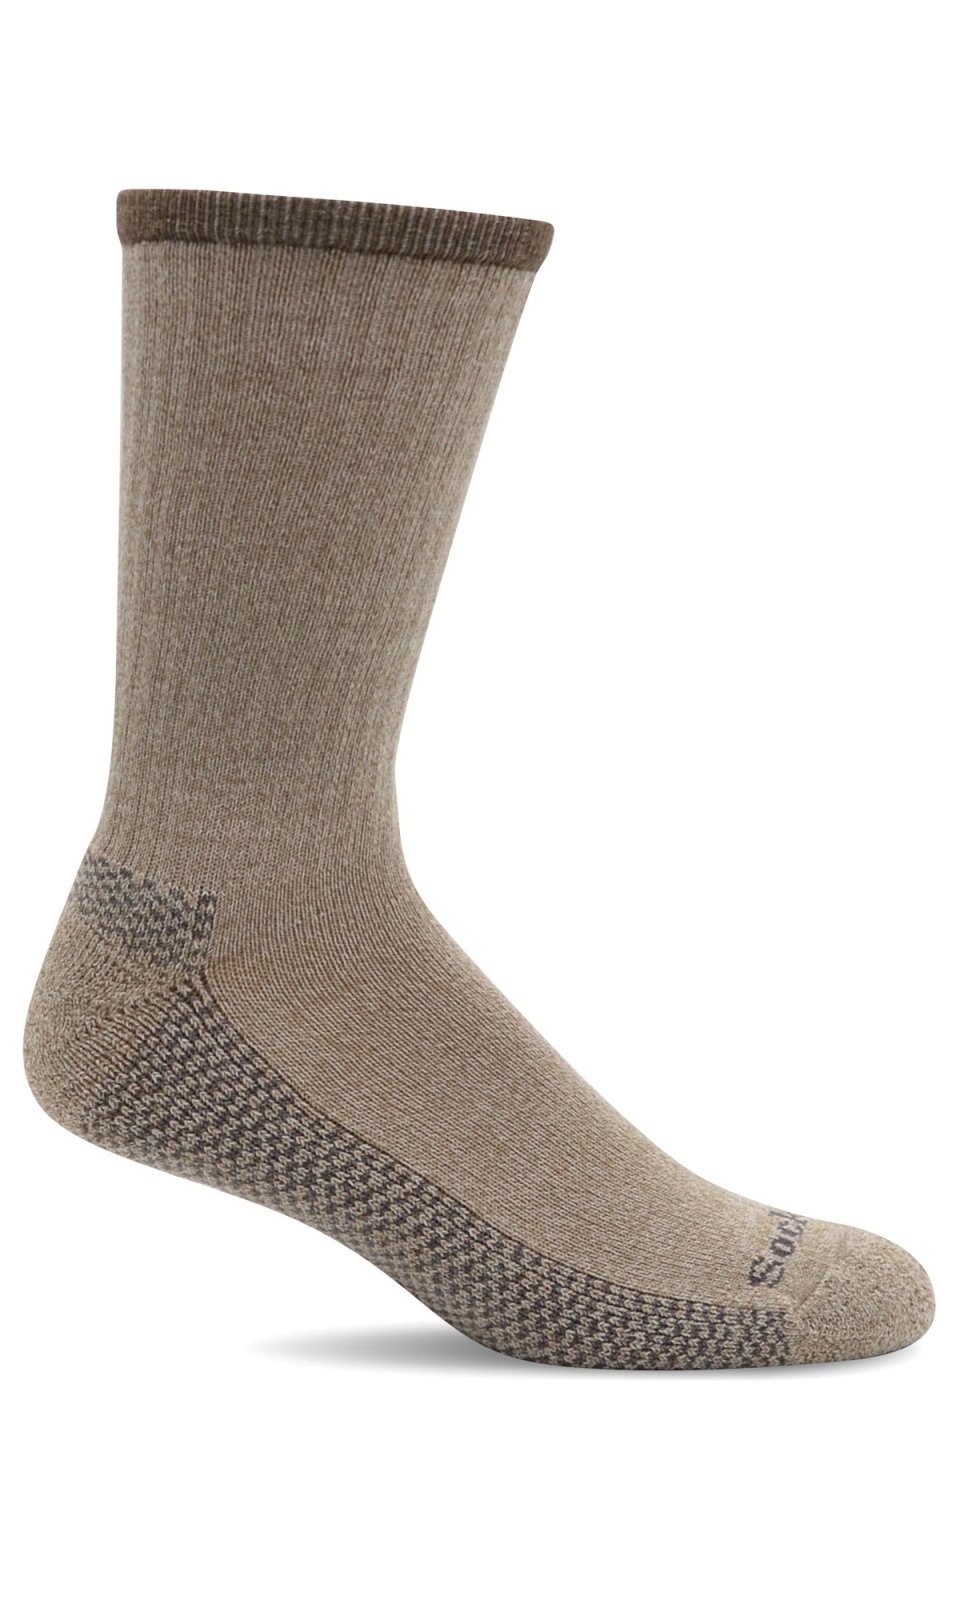 Men's Ranger | Essential Comfort Socks - Merino Wool Essential Comfort - Sockwell